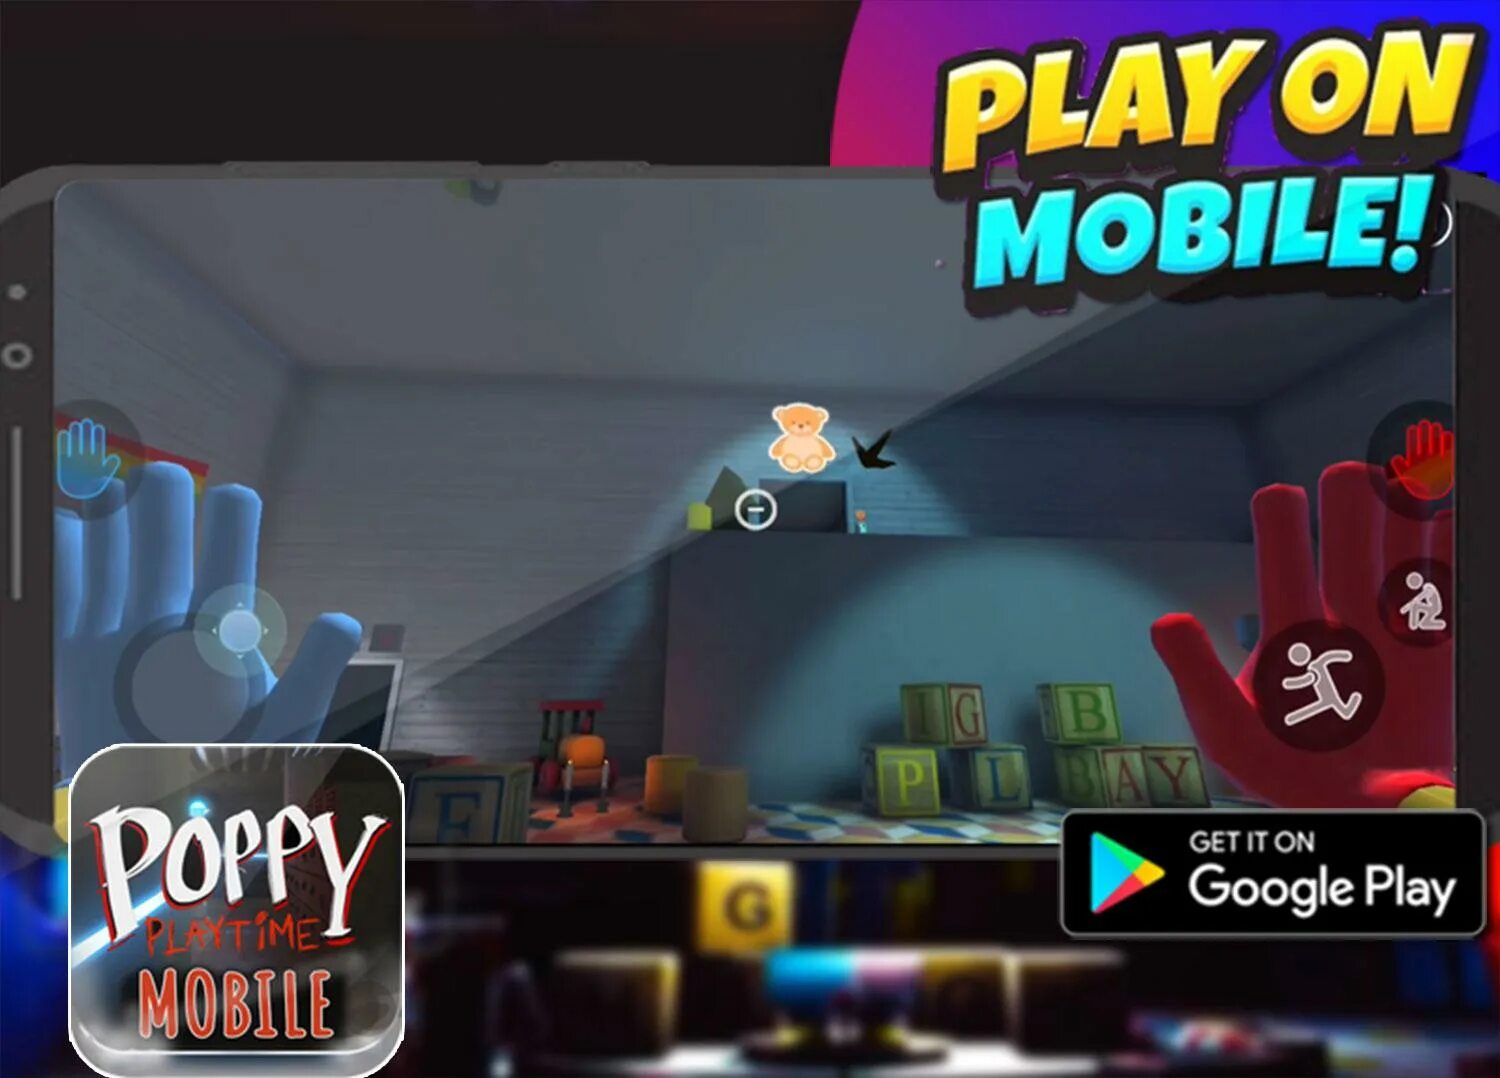 Poppy mobile 1. Poppy mobile v 1.7.6. Poppy Playtime 3 mobile. Читы на Поппи мобайл. Poppy playtime chapter 3 mobile на андроид